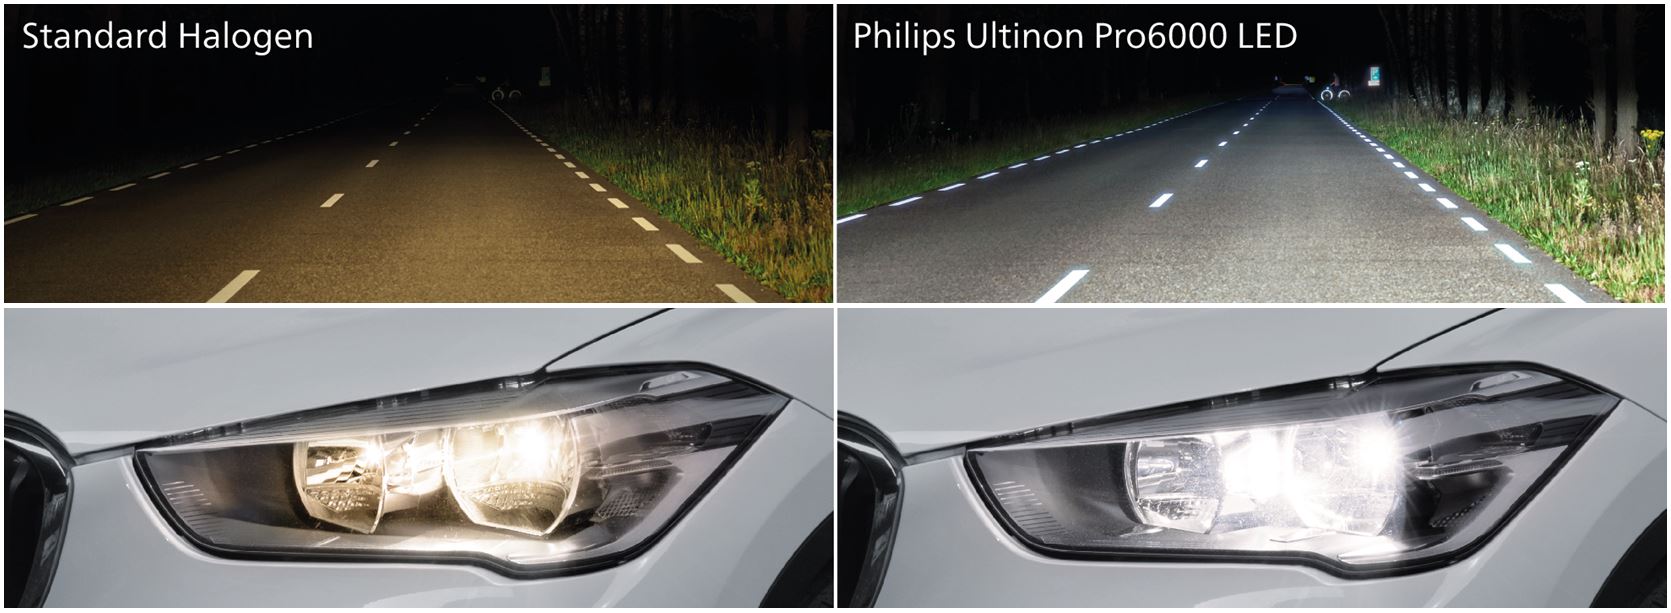 Philips H7-LED zum Nachrüsten mit Straßenzulassung - AUTO BILD